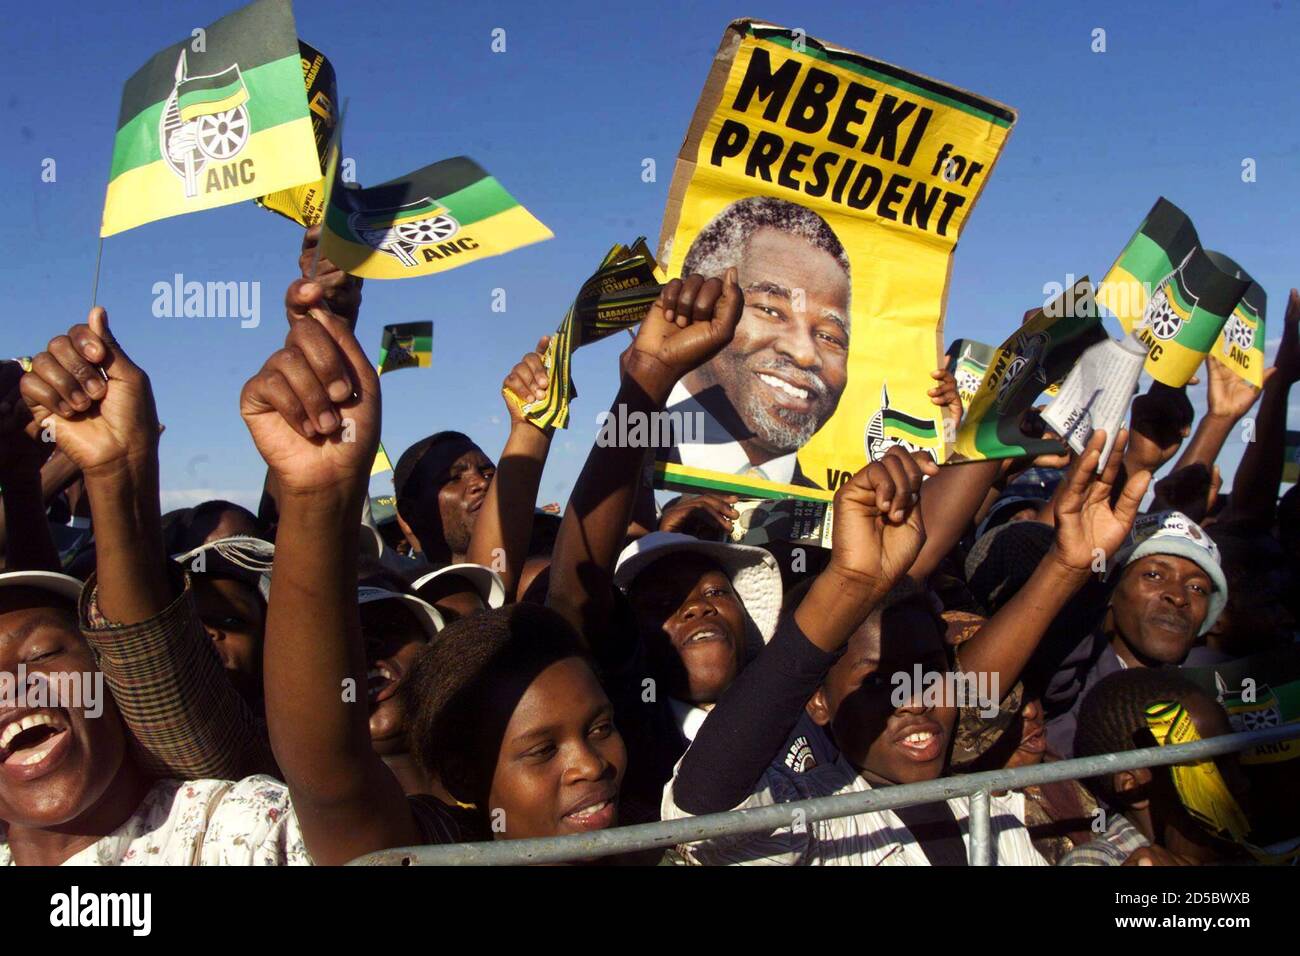 ANC Anhänger Welle, der stellvertretende Präsident Thabo Mbeki während einer Kampagne Wahlveranstaltung in einem Township in Nelspruit 23 Mai. Mbeki, fällig zum Erfolg des scheidenden Präsidenten [Nelson Mandela], geschworen, Korruption von Regierungsbeamten in seiner Verwaltung zu kämpfen, wenn er Präsident gemacht wird. Der ANC wird voraussichtlich die Wahl mit überwältigender Mehrheit zu gewinnen. Stockfoto